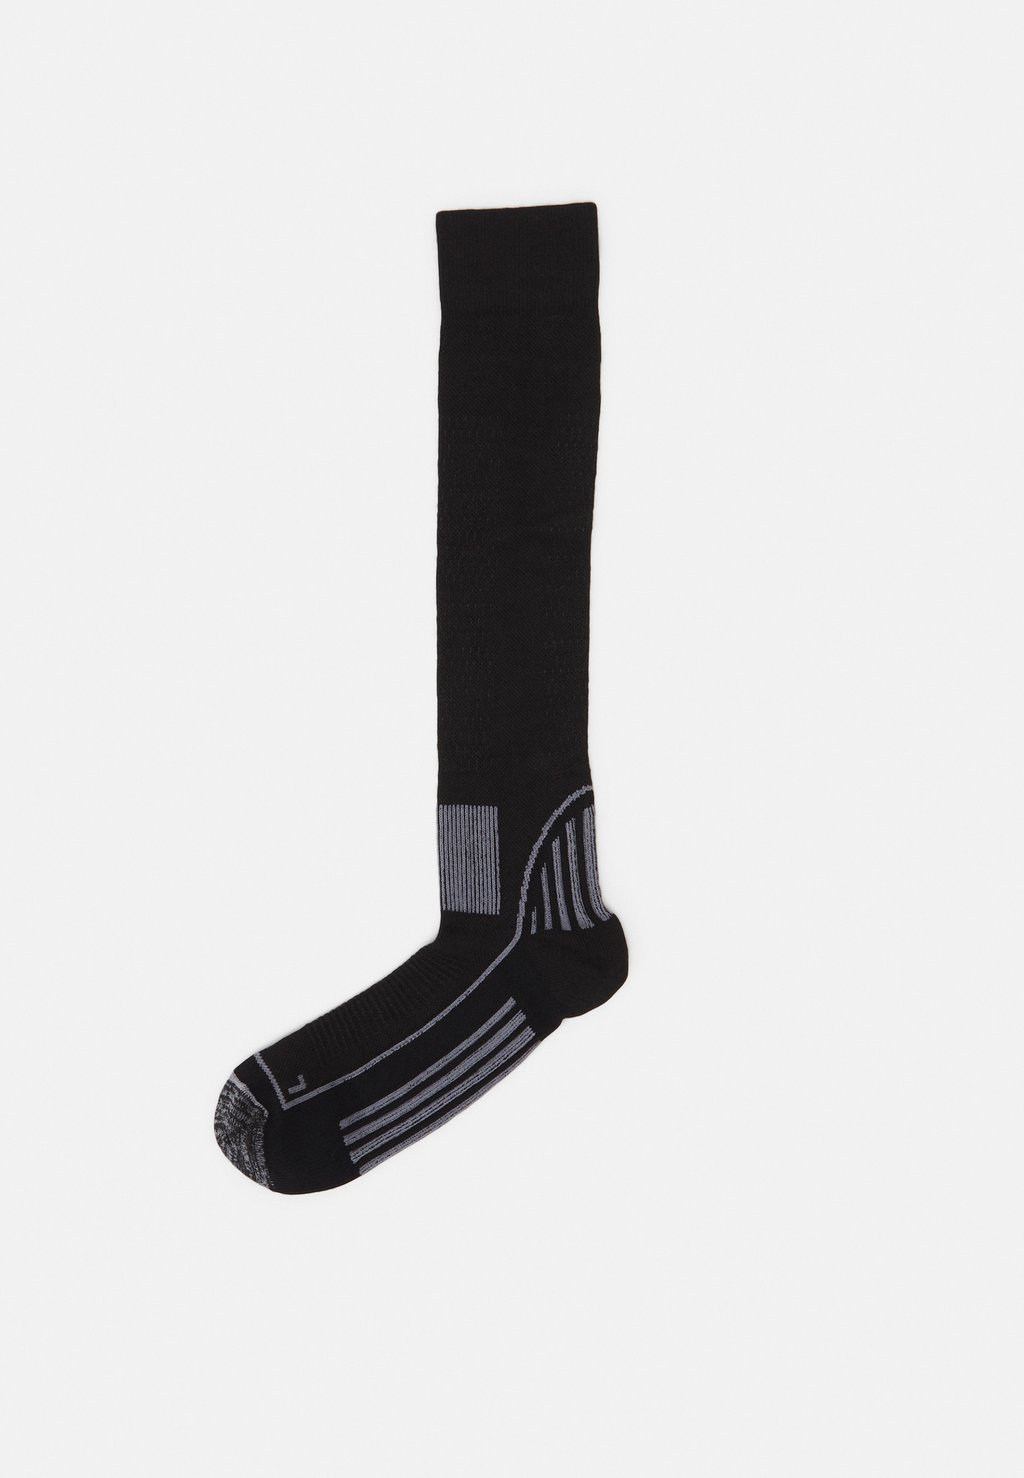 футболка с принтом original tee peak performance цвет med grey melange black Спортивные носки Ski Sock Unisex Peak Performance, цвет black/grey melange